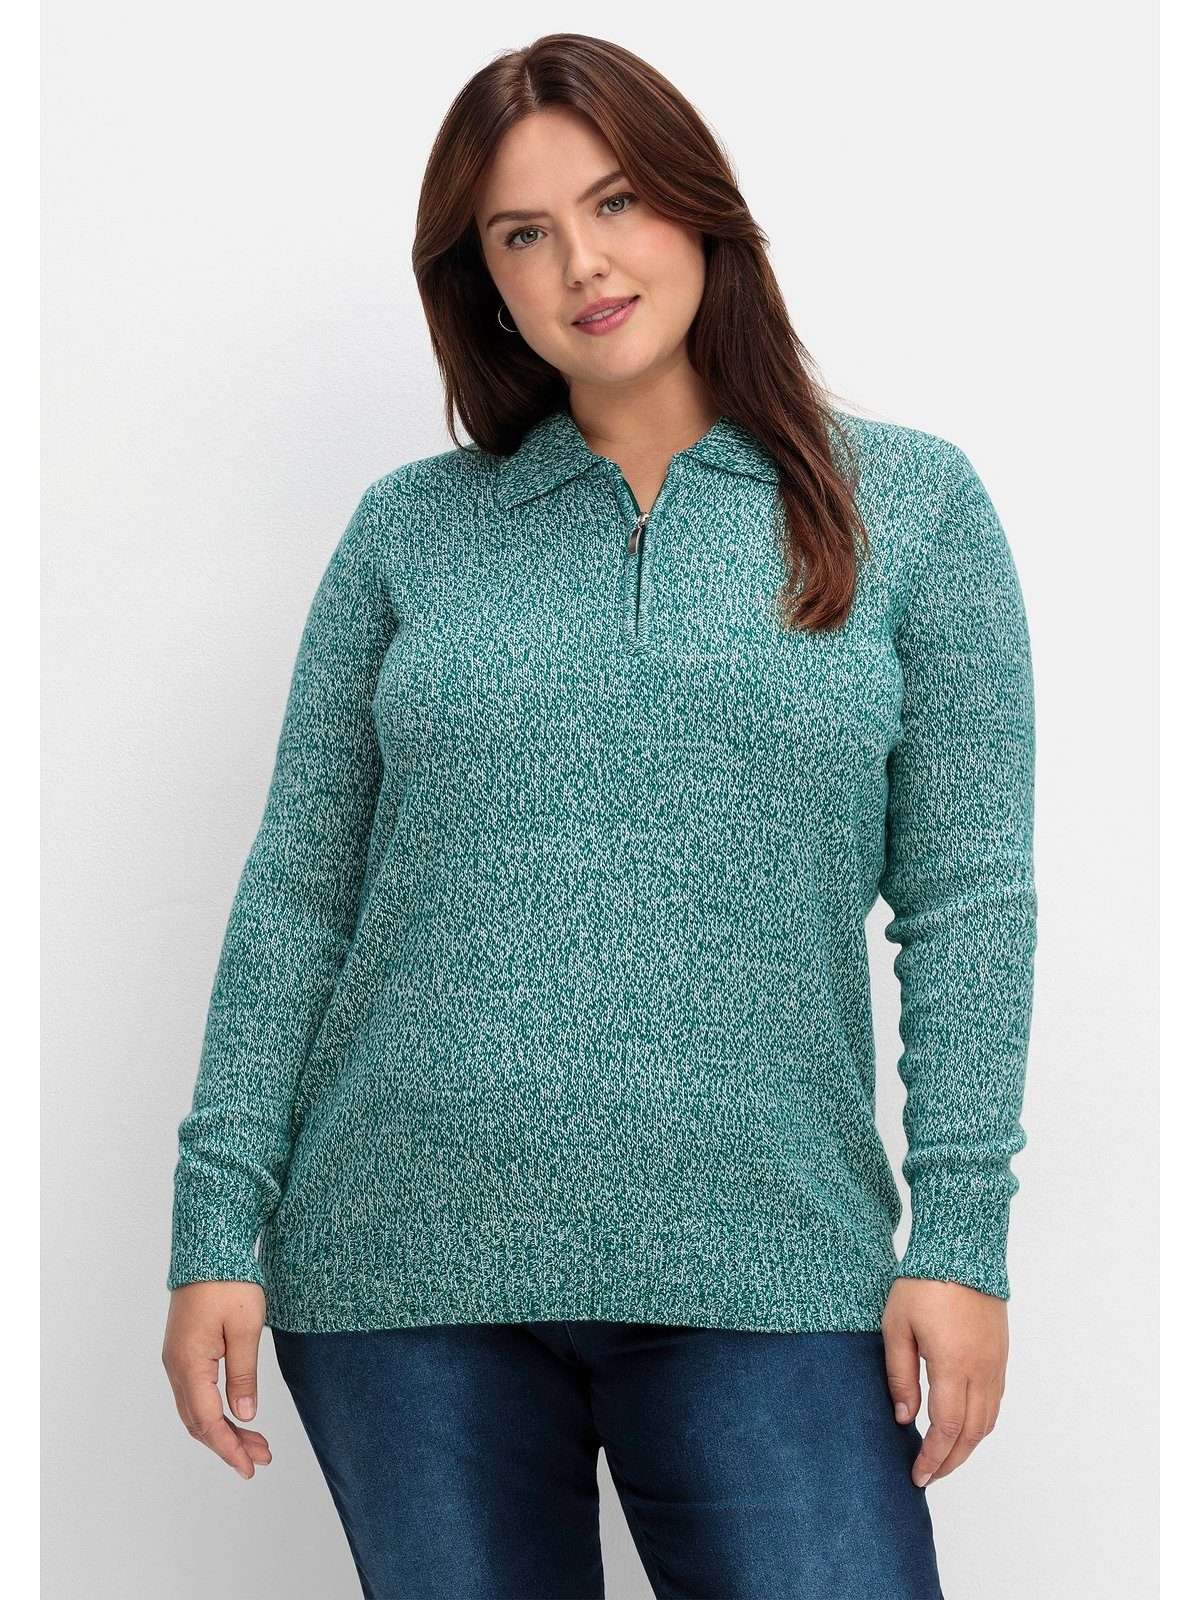 Вязаный свитер больших размеров с воротником-поло.